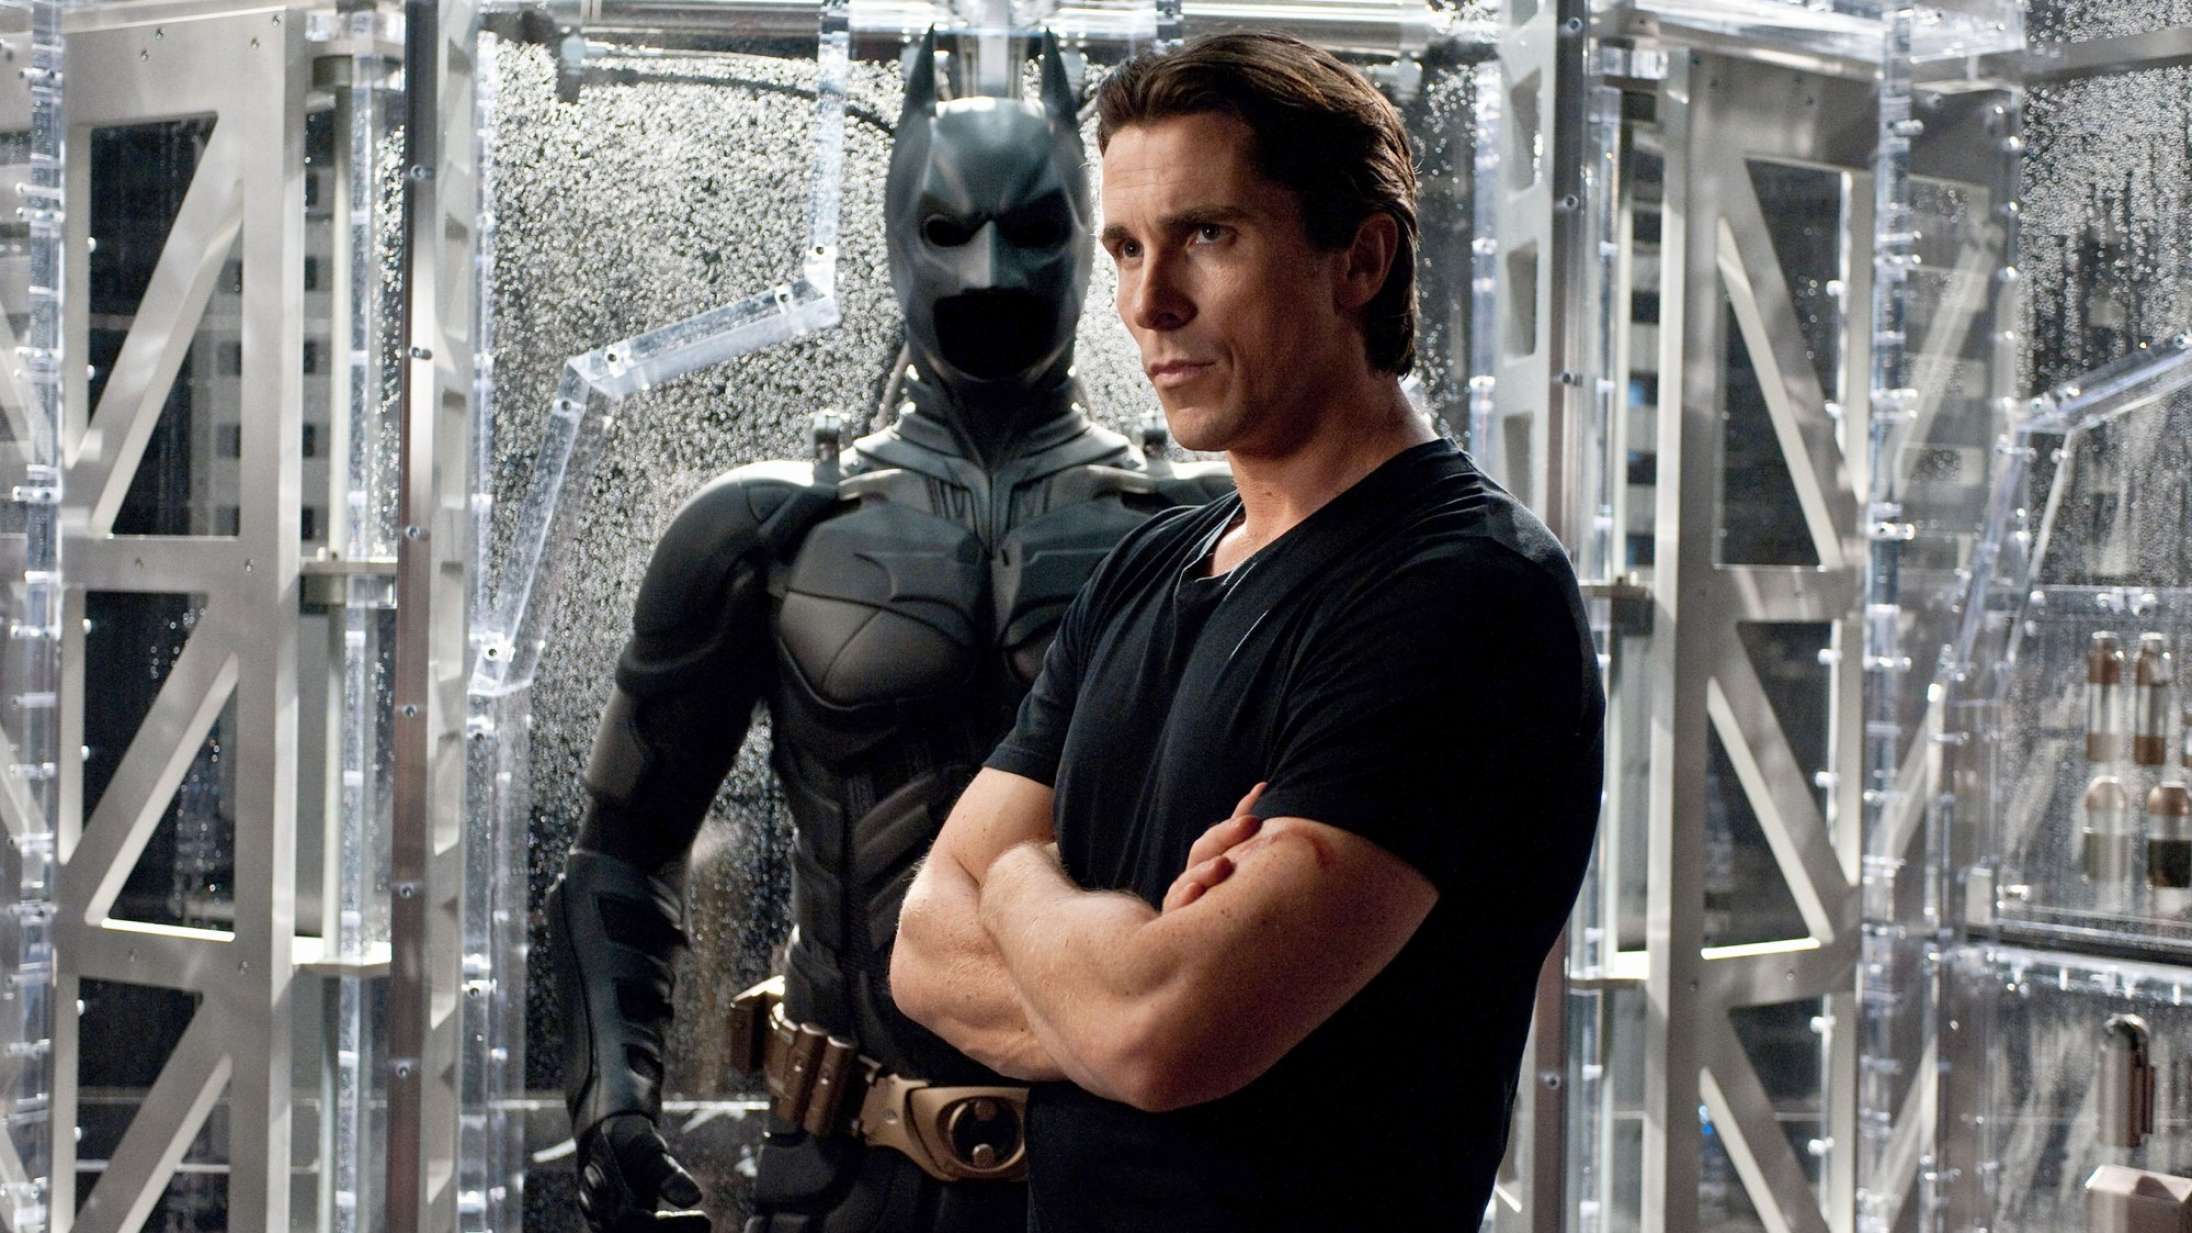 Christian Bale giver Robert Pattinson det ultimative Batman-tip: Rigtige superhelte tisser selv